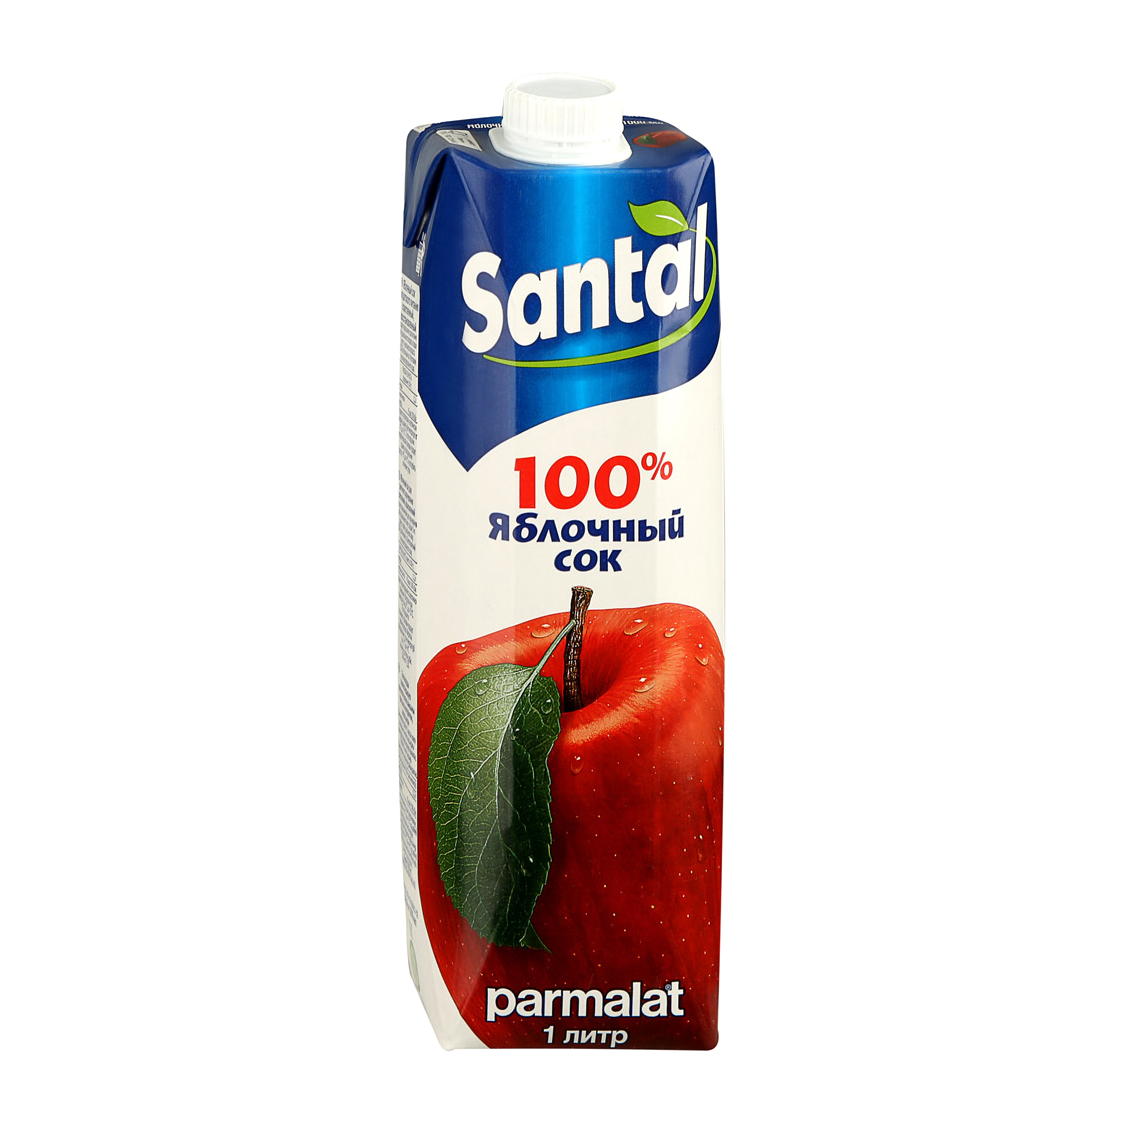 Сок Santal яблочный 100% 1 л сок santal ананасовый 100% 1 л